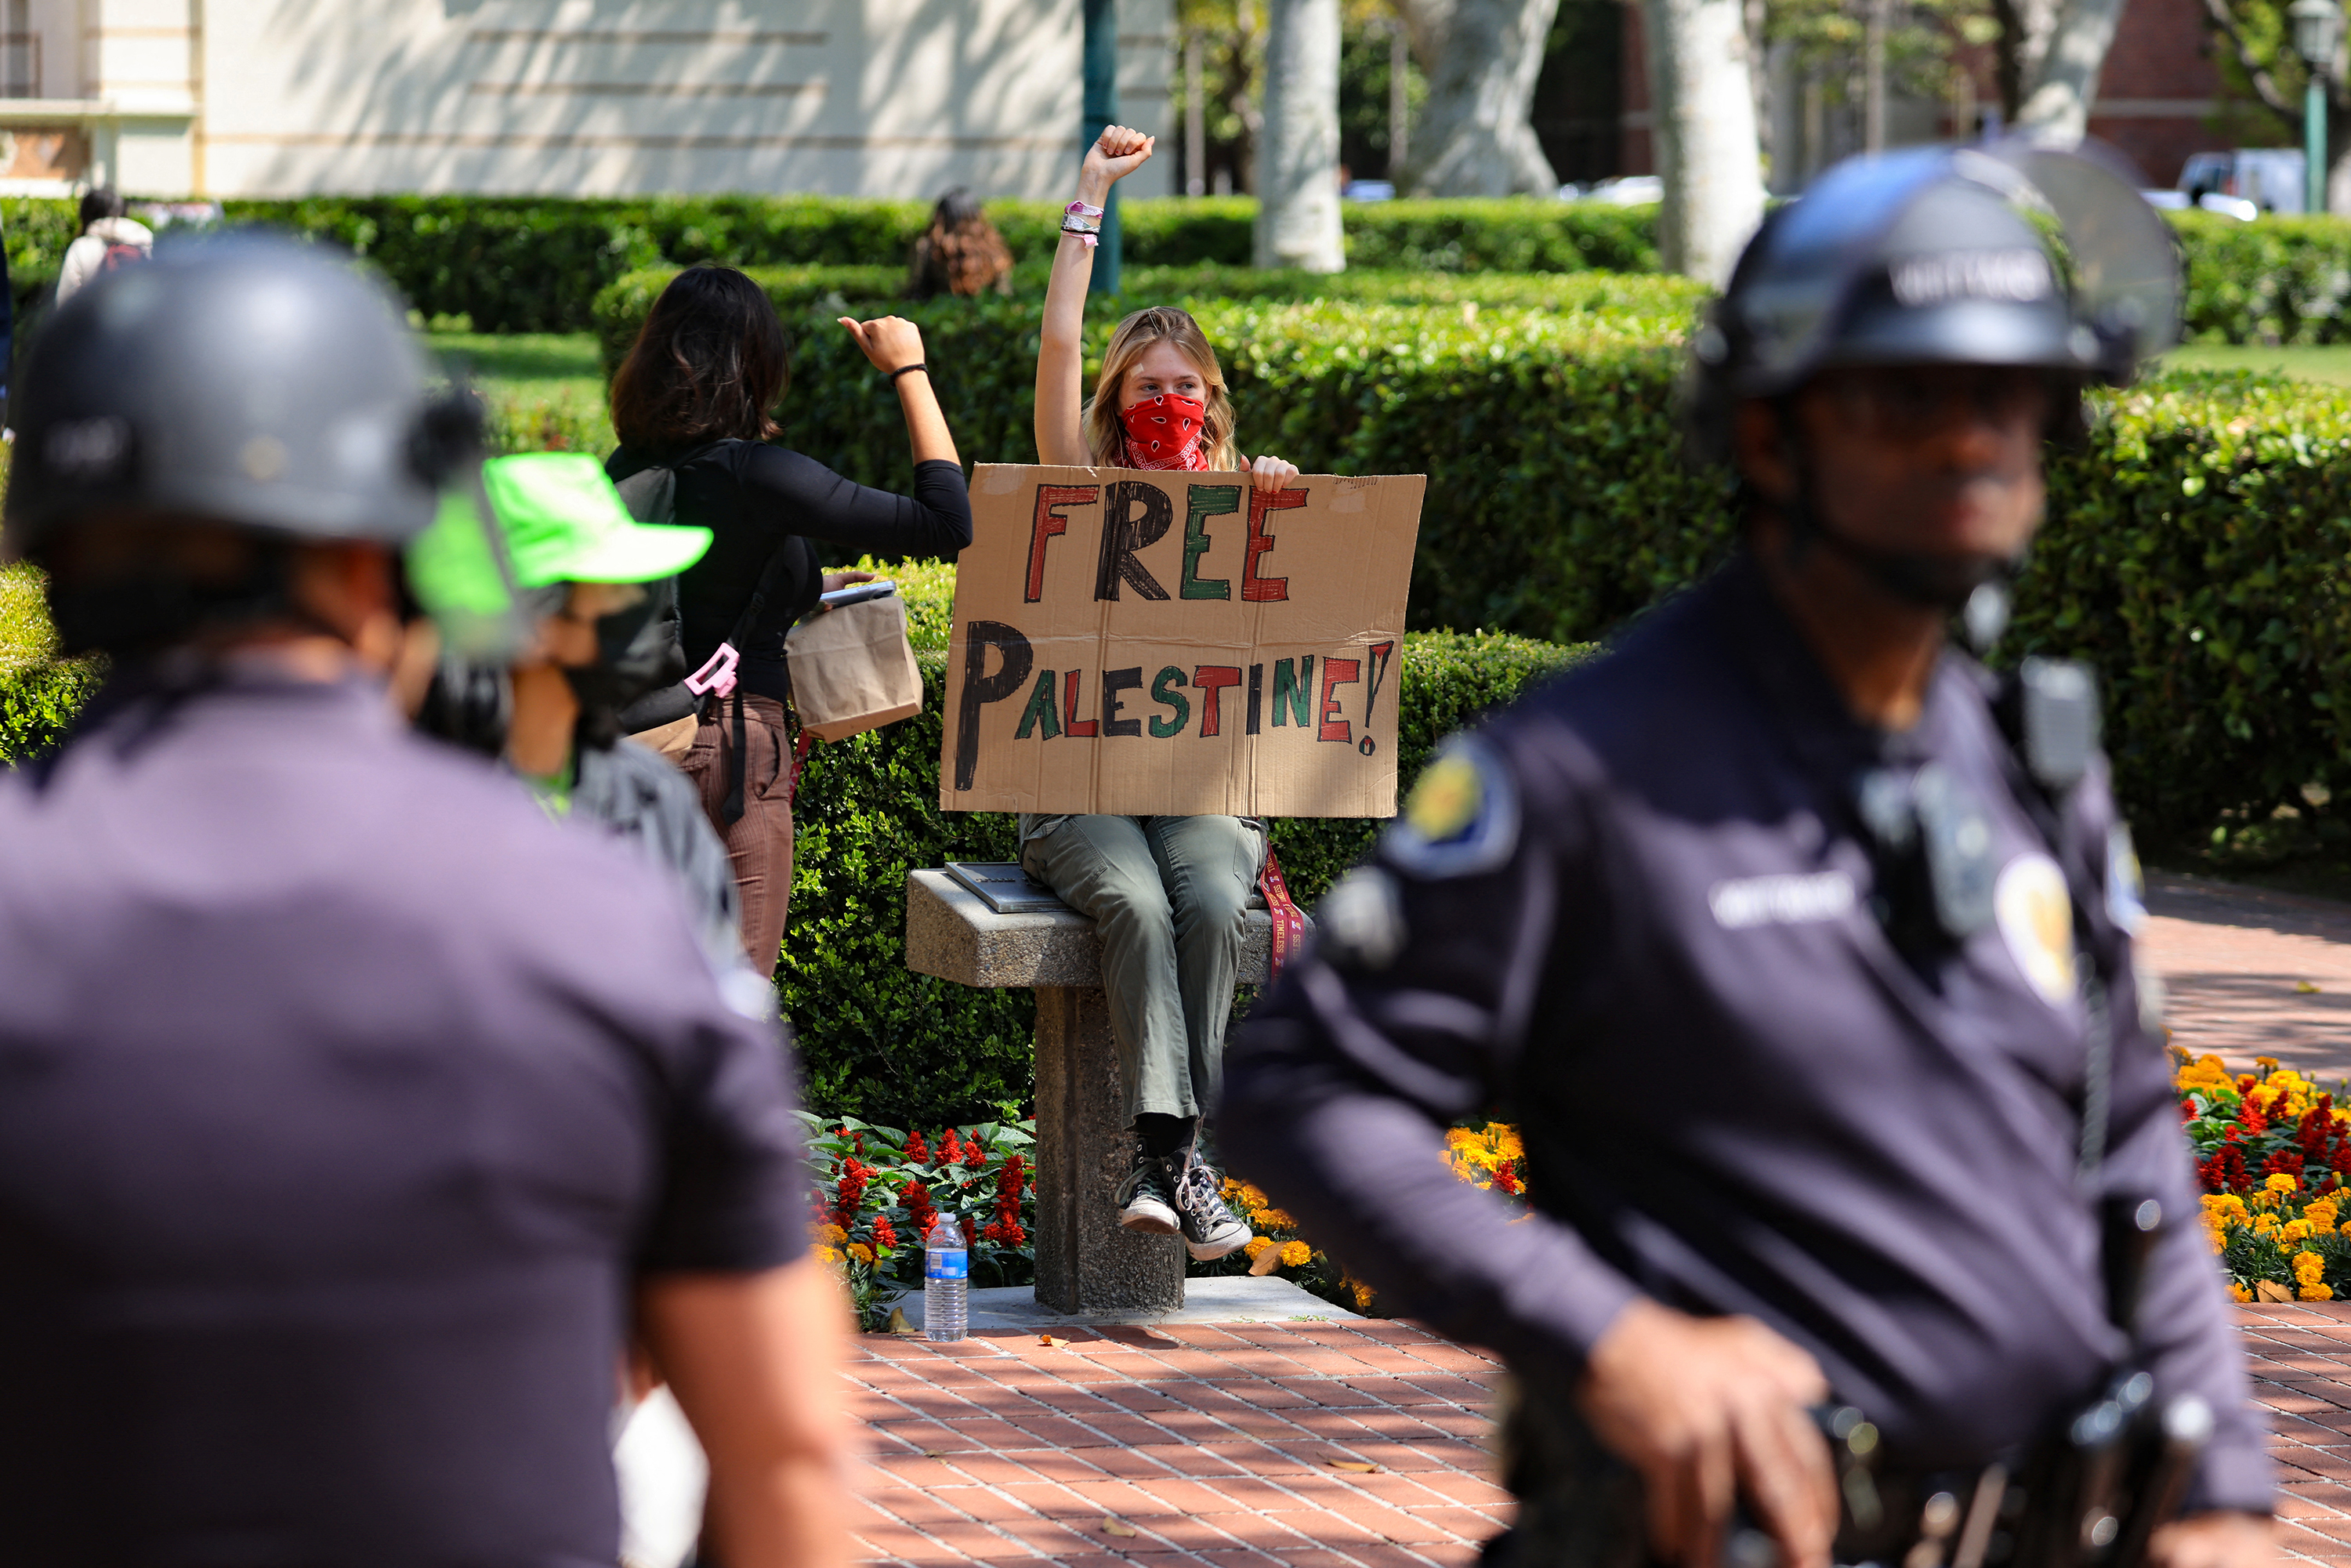 4 月 24 日，在加利福尼亚州洛杉矶的南加州大学校友公园，学生们搭建了支持巴勒斯坦人的抗议营地后，一名举着牌子的示威者举起了拳头。